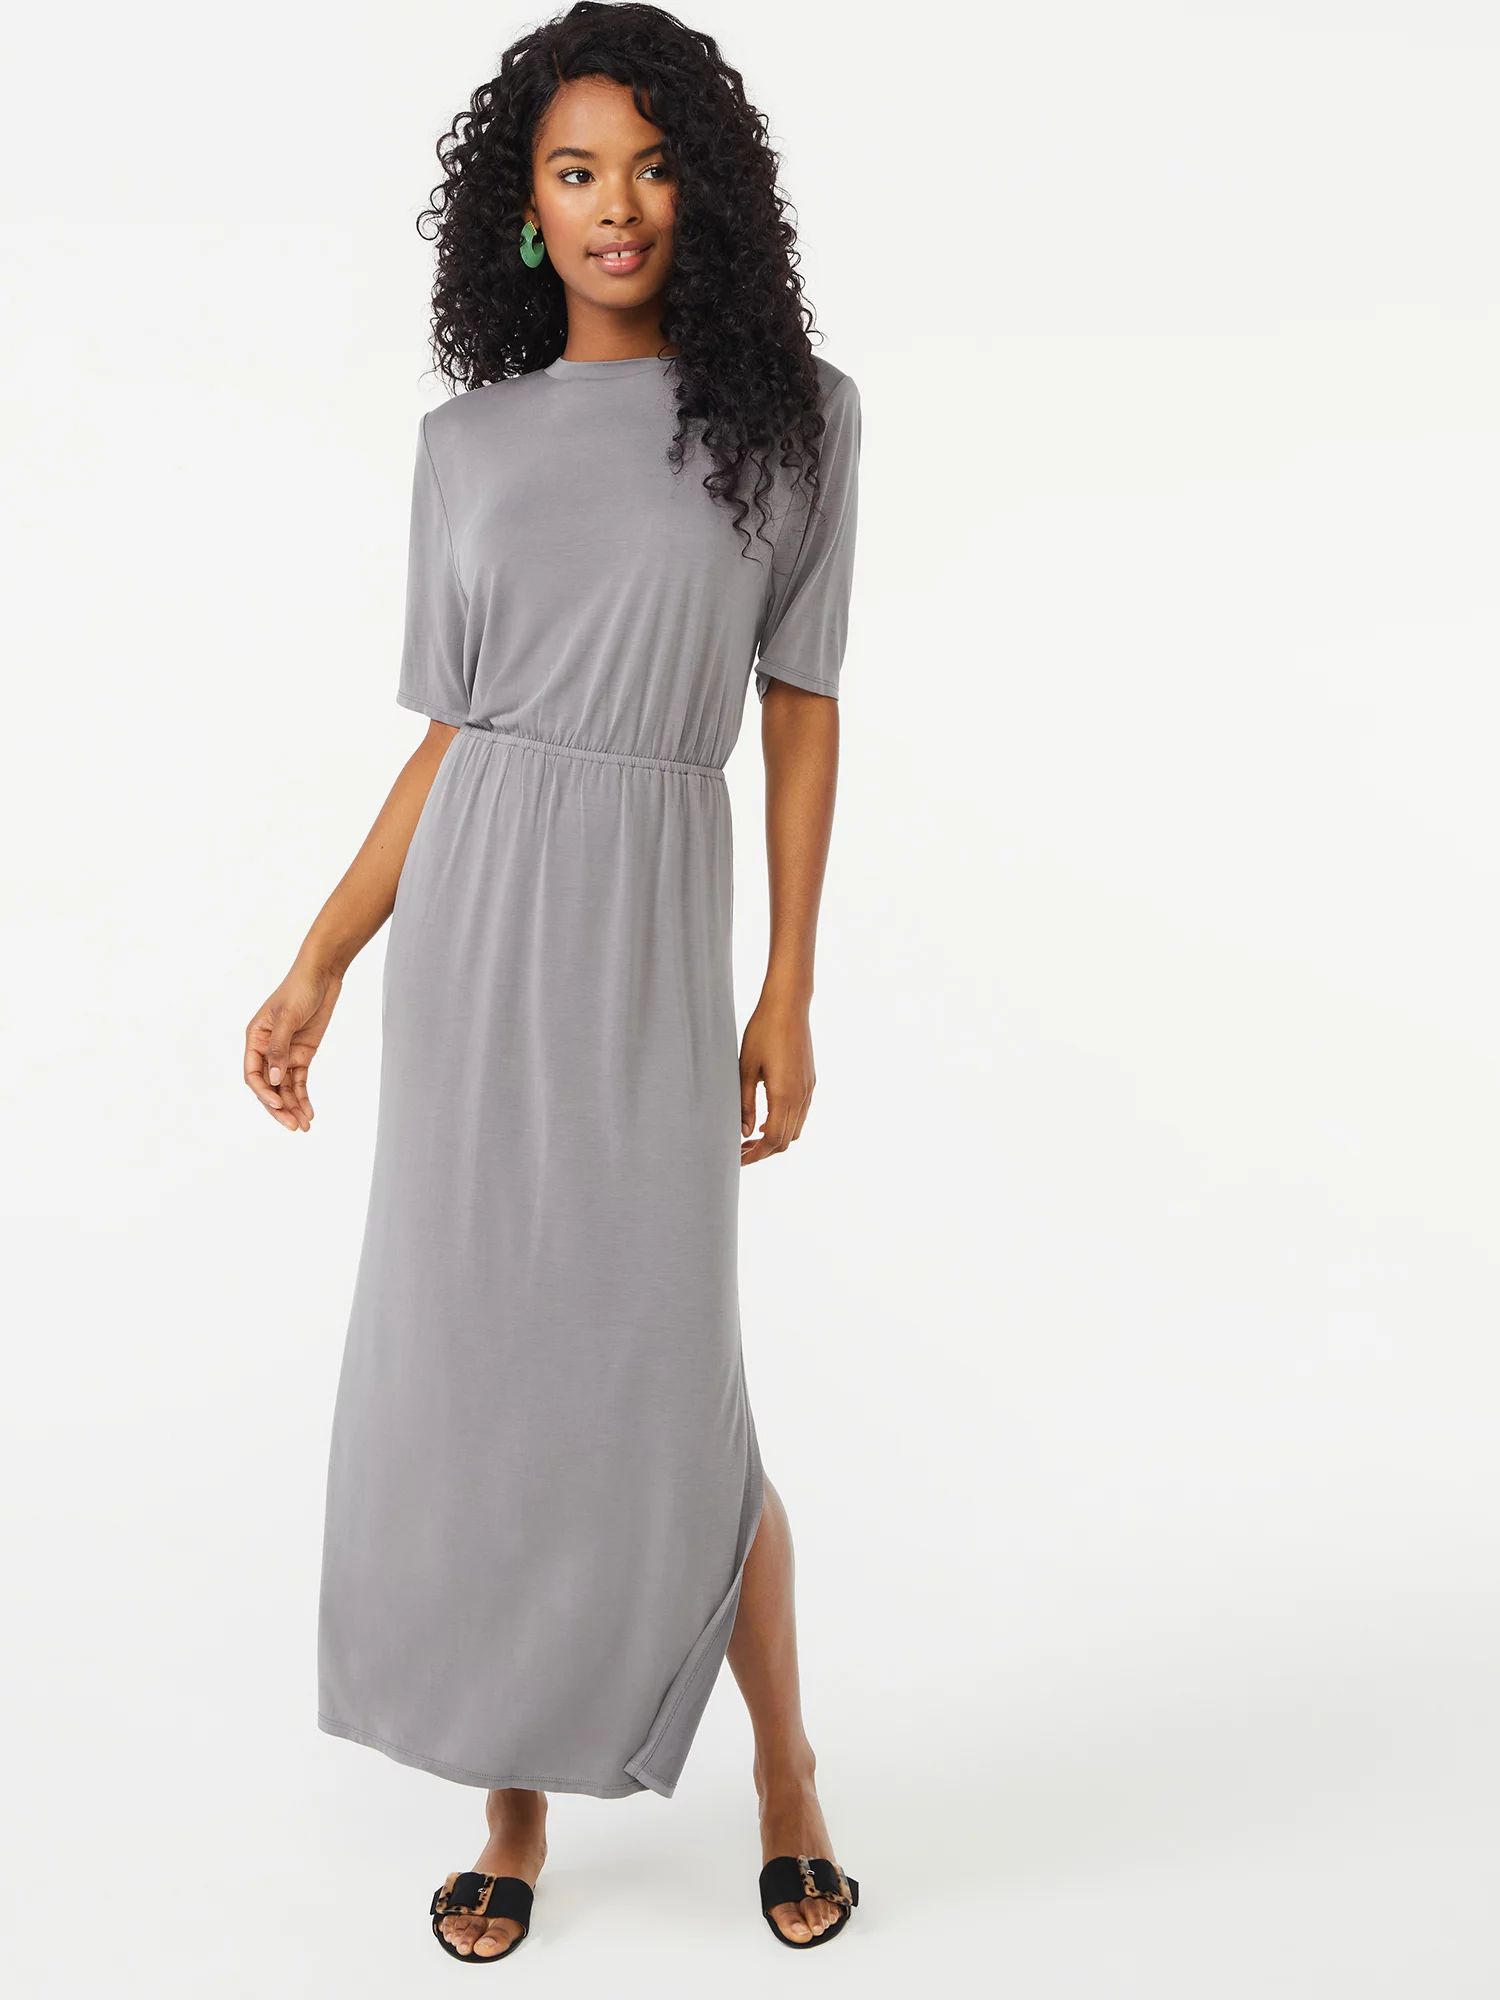 Scoop Women's Shoulder Pad Dress | Walmart (US)